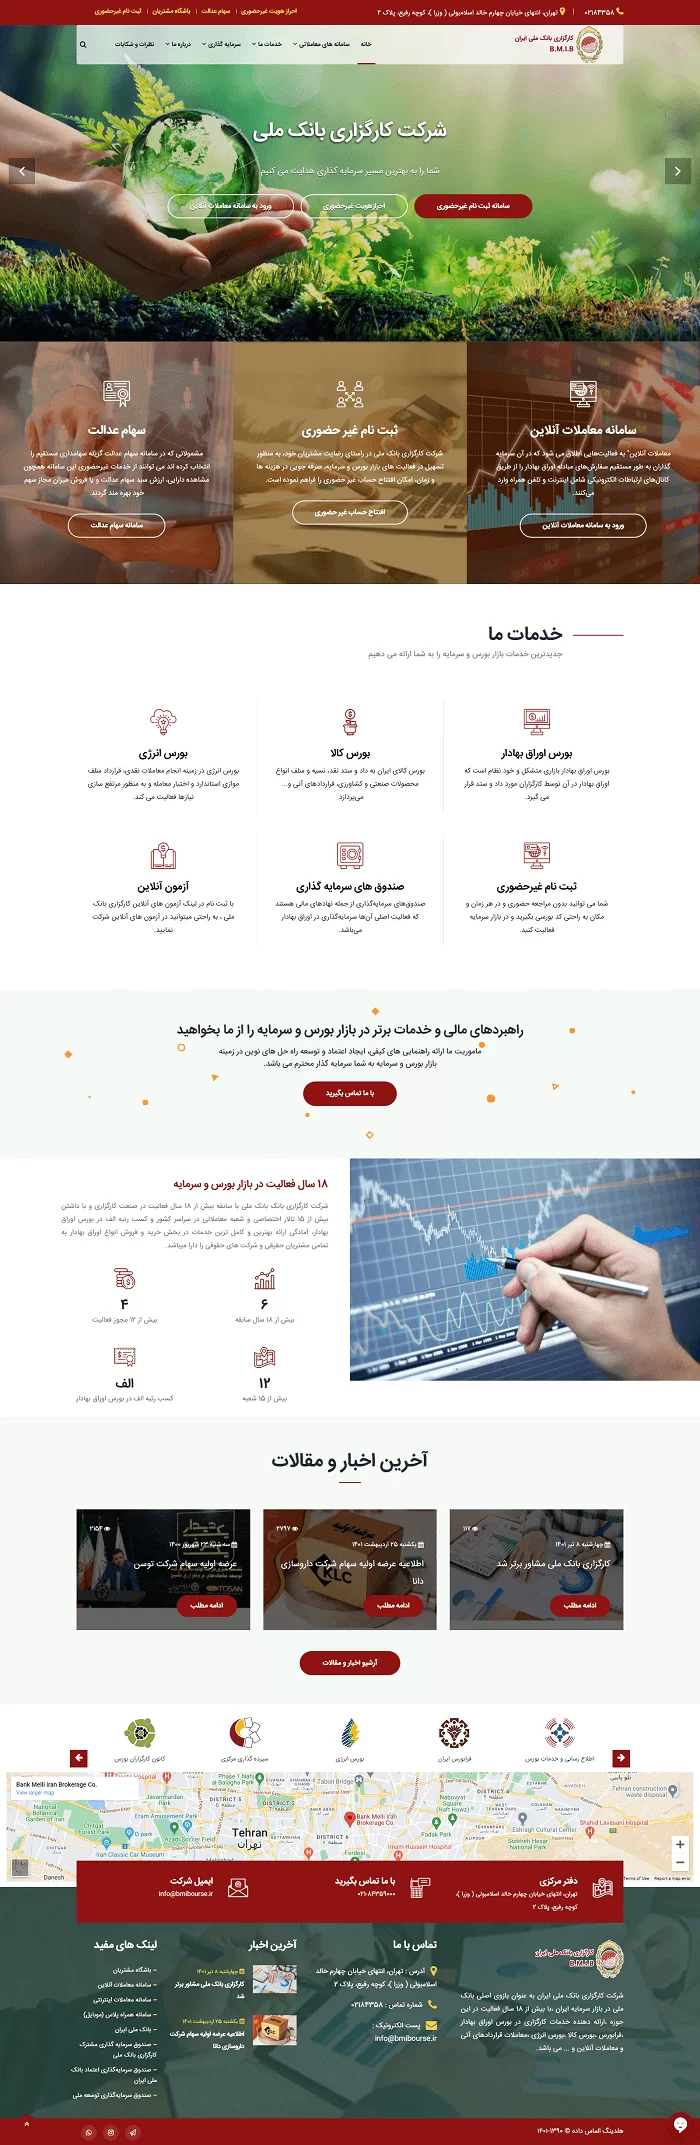 طراحی سایت کارگزاری بانک ملی